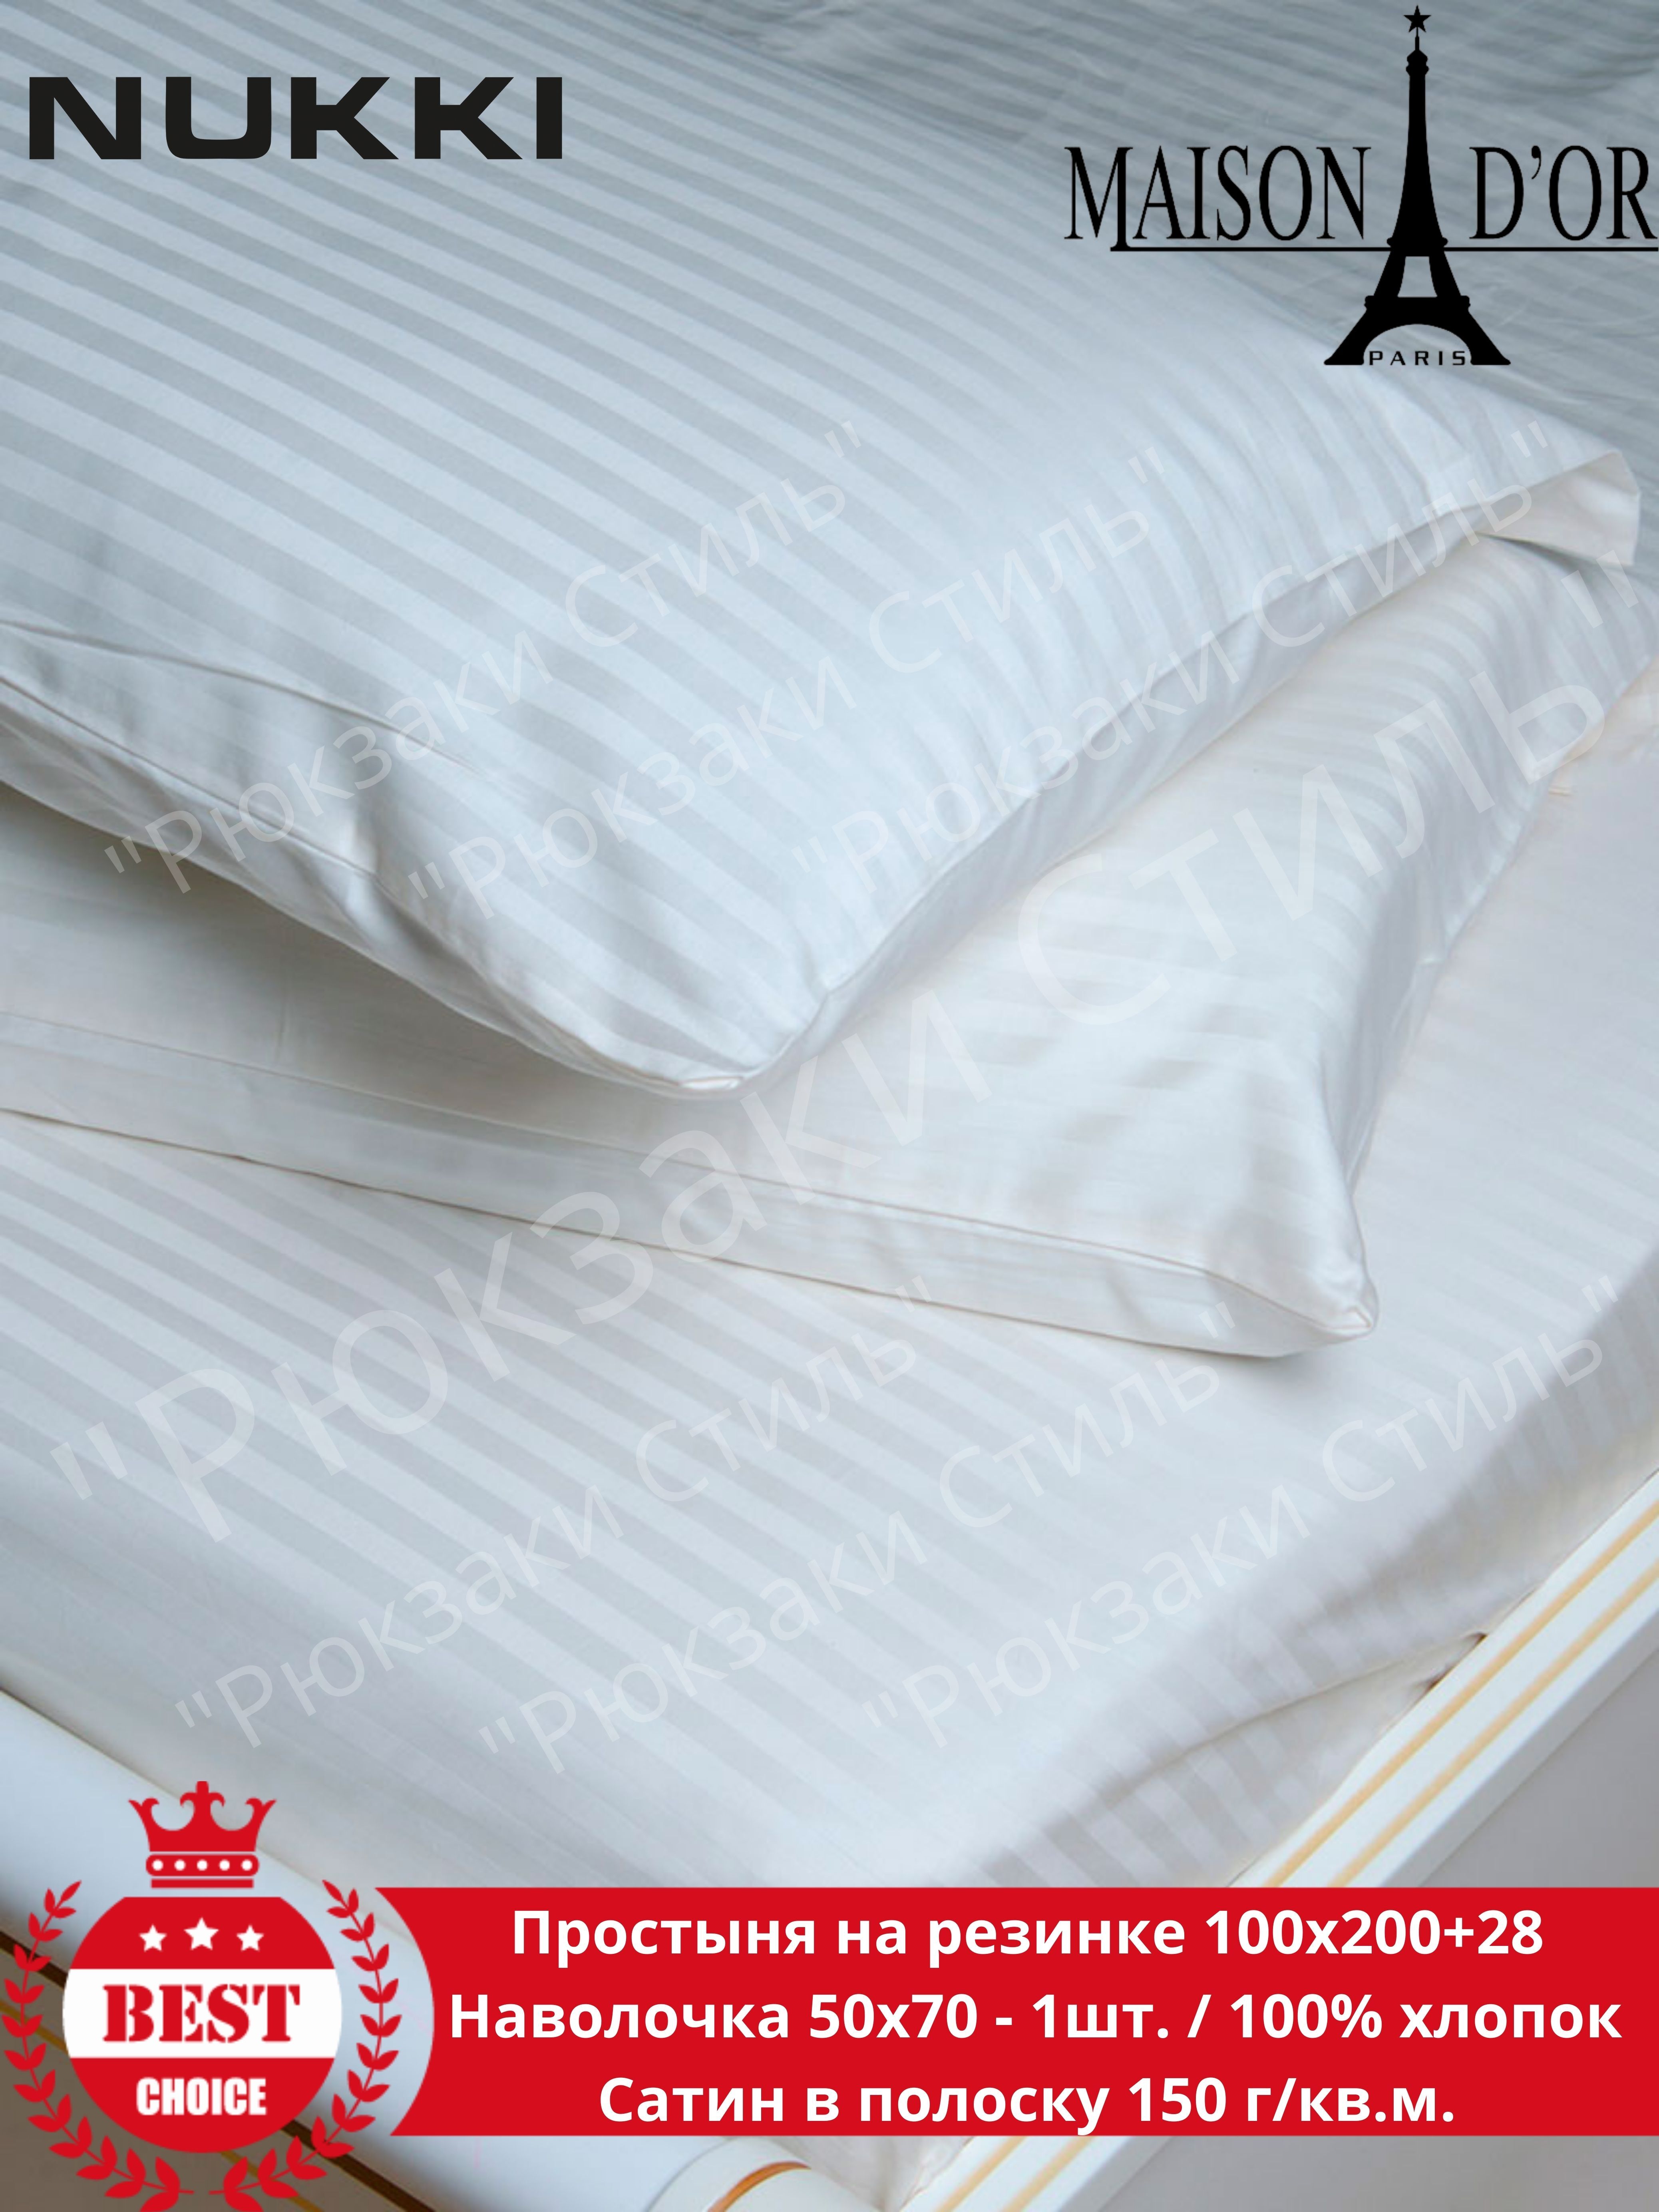 размер простыни на двуспальную кровать с резинкой